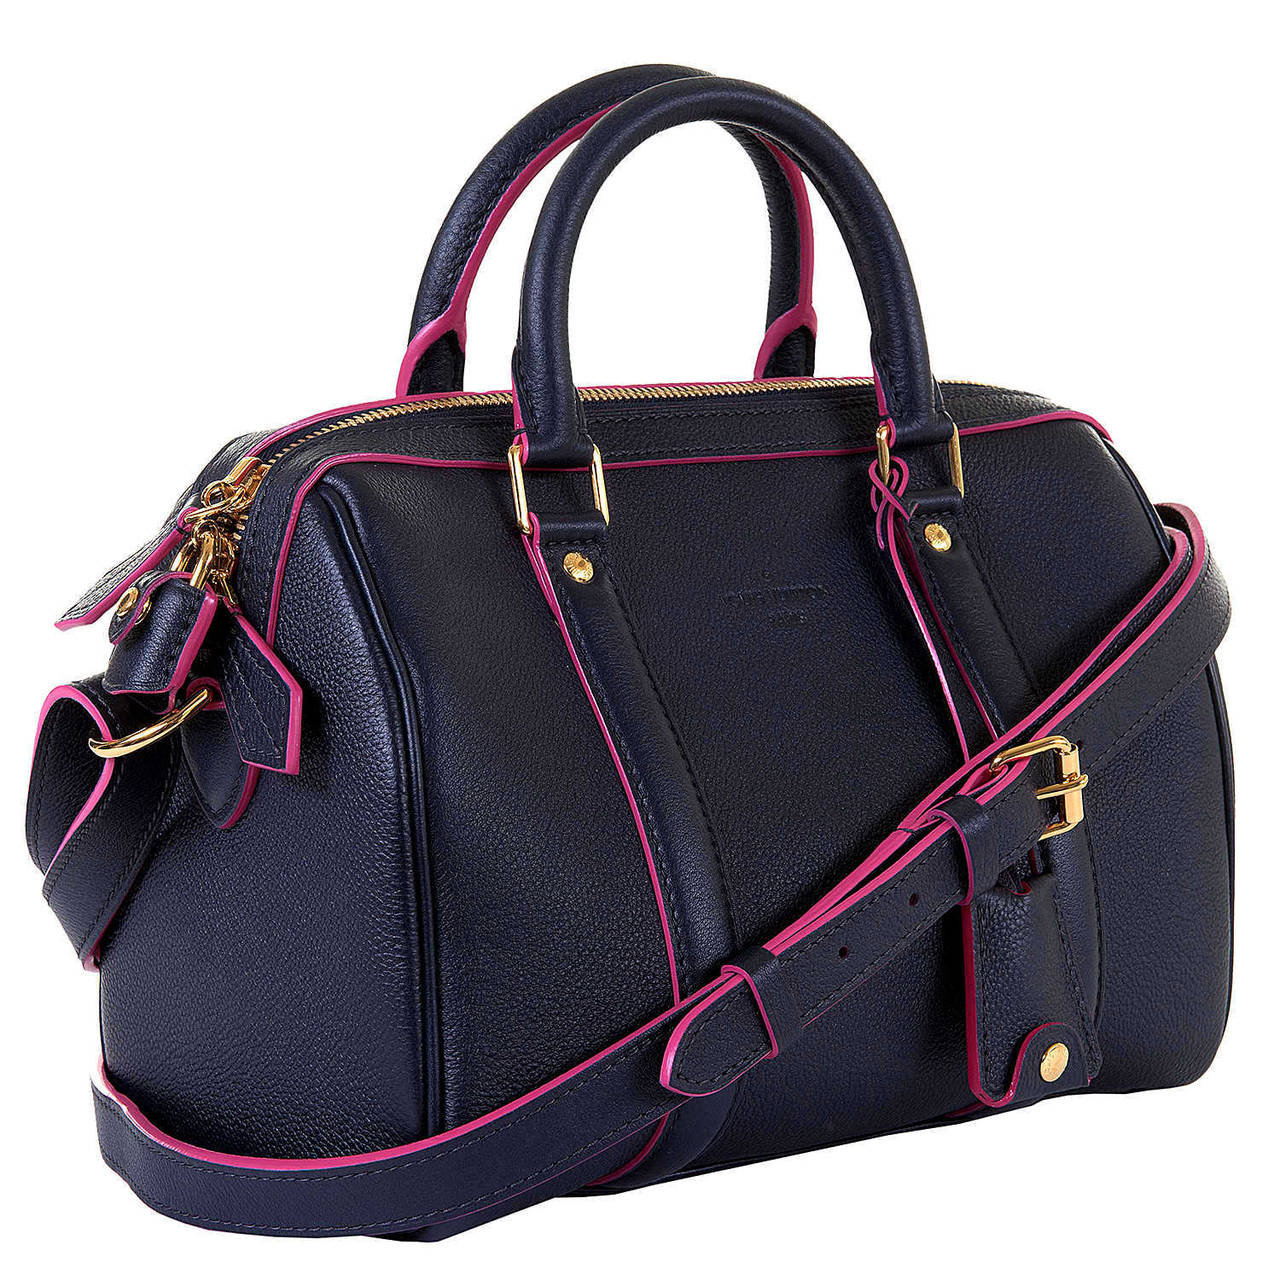 'New & Unused' Limited Edition Louis Vuitton Sofia Coppola 'Veau-Cachmire'  Bag 5